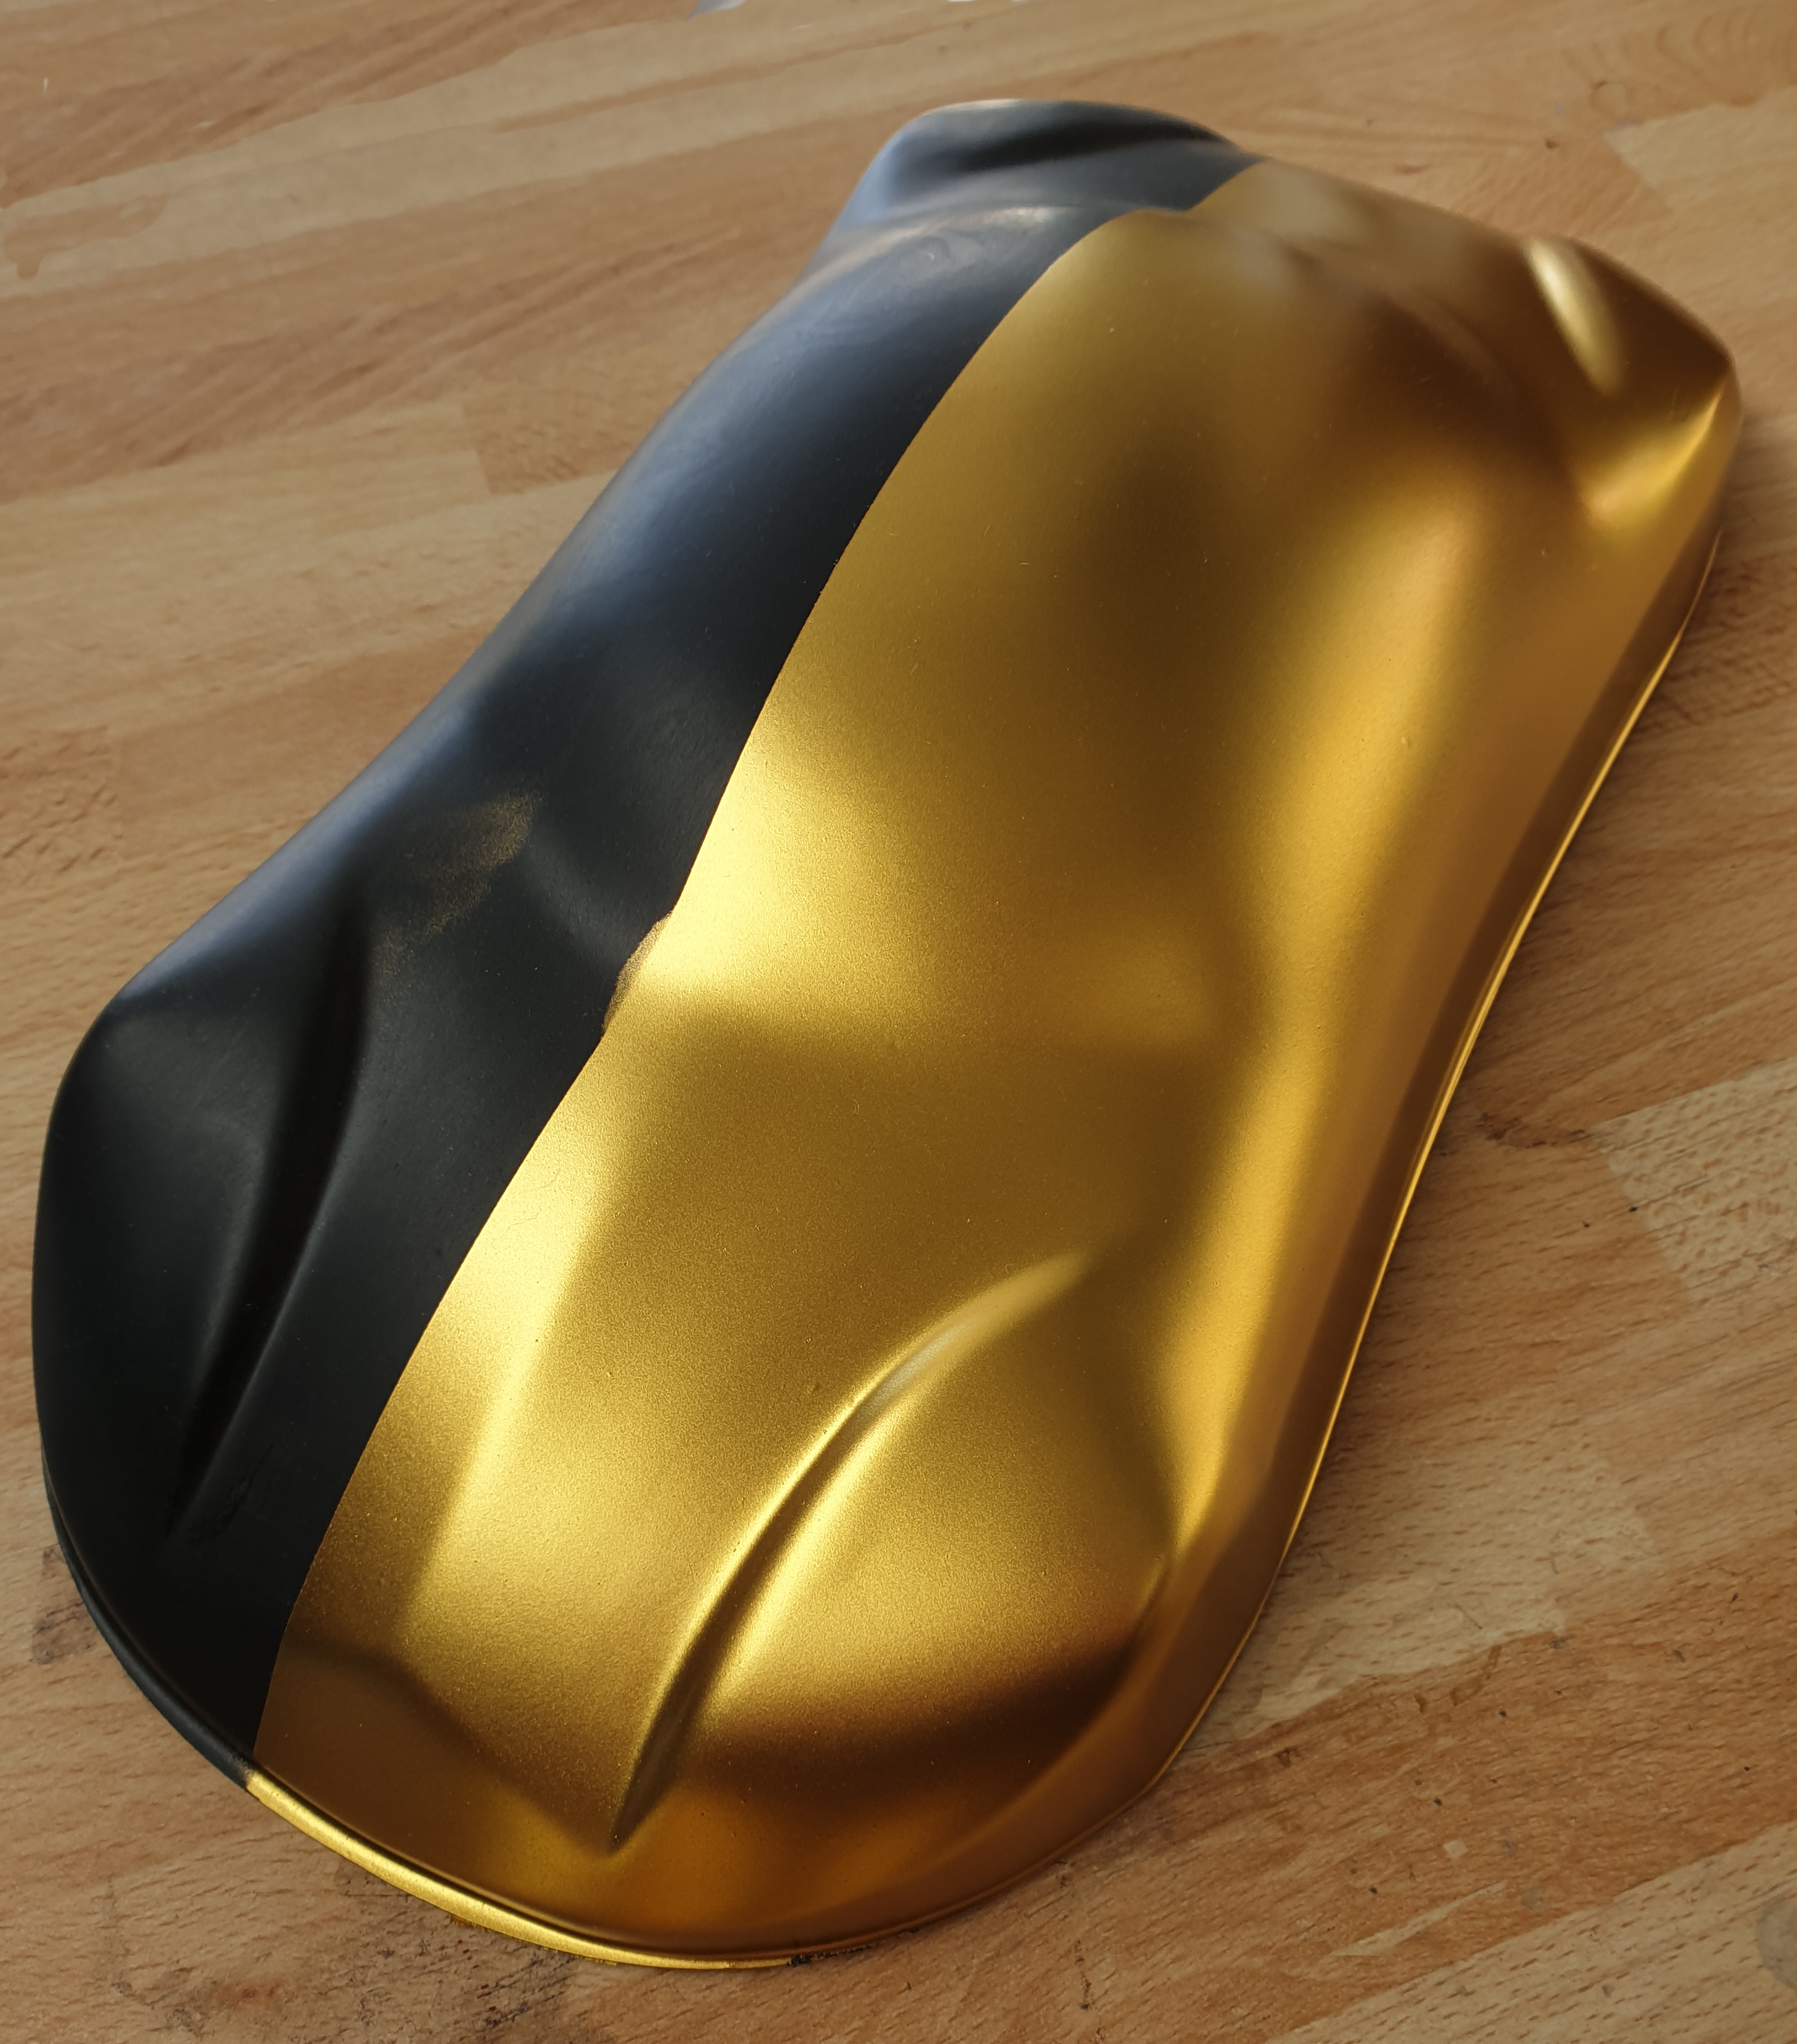 Van storm horizon Wetland gouden verf voor carrosserie – Goud 8 echt micron